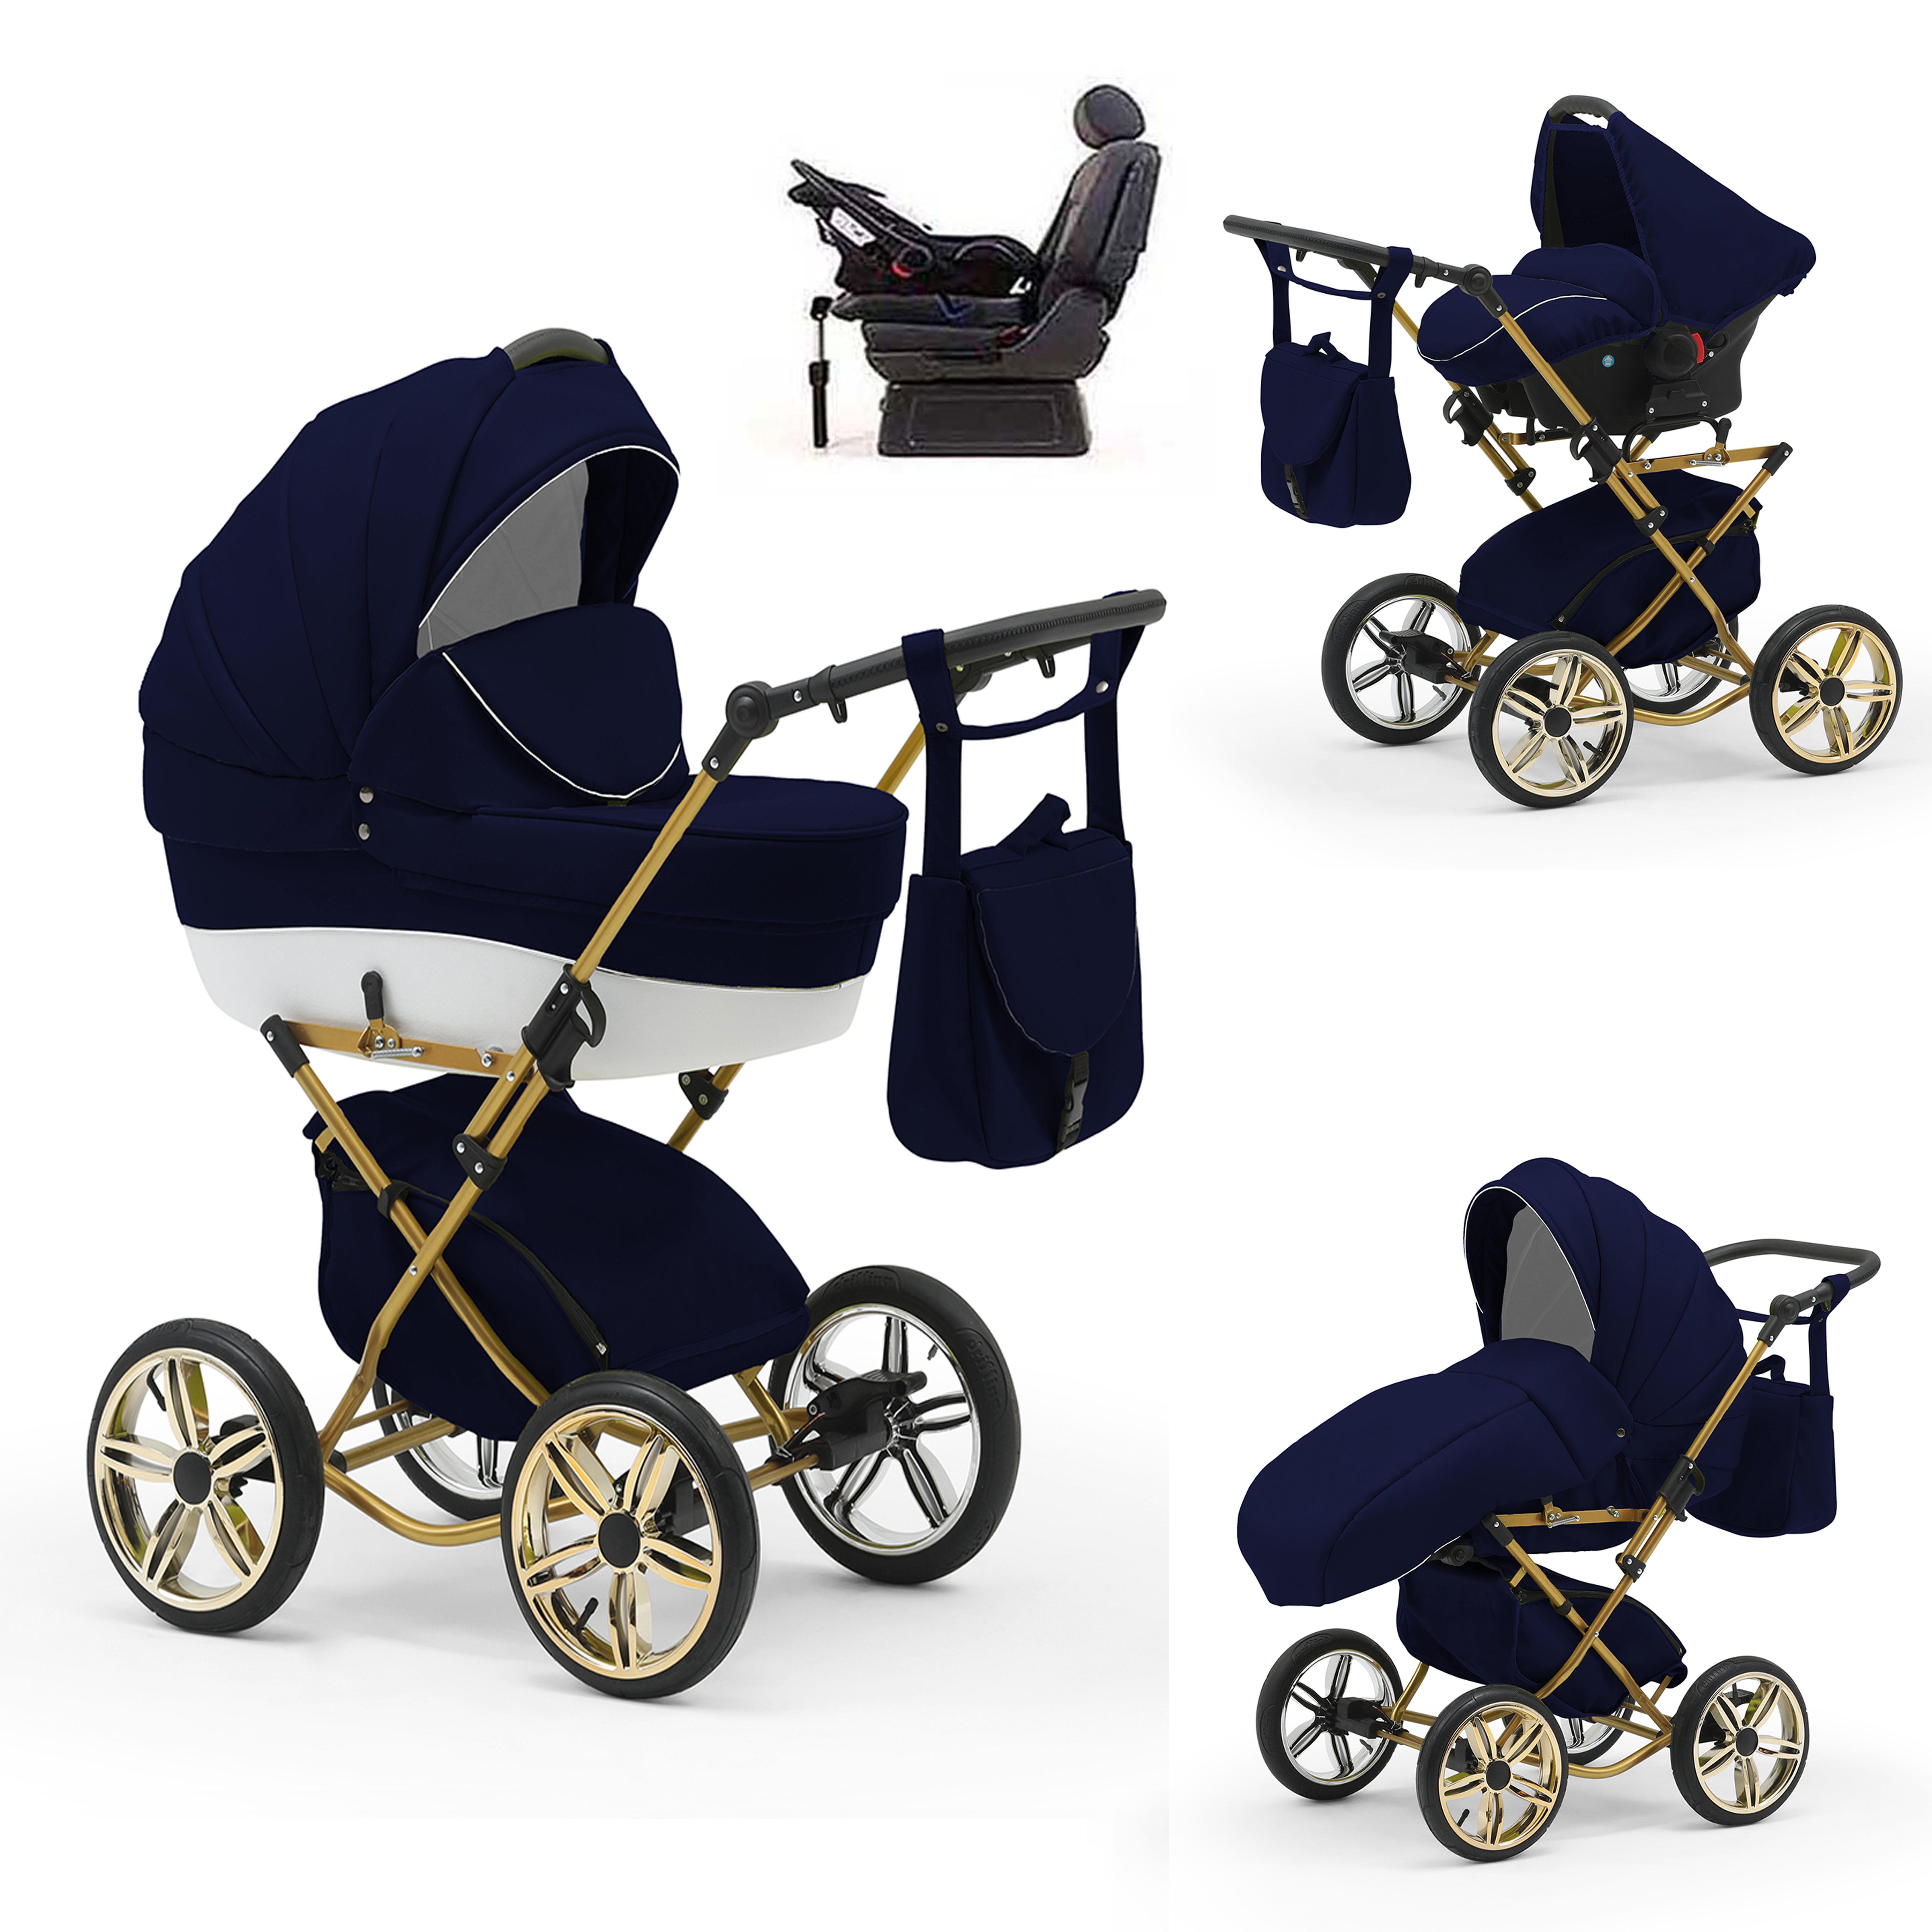 babies-on-wheels Kombi-Kinderwagen Sorento 4 in 1 inkl. Autositz und Iso Base - 14 Teile - in 10 Designs Navy-Weiß